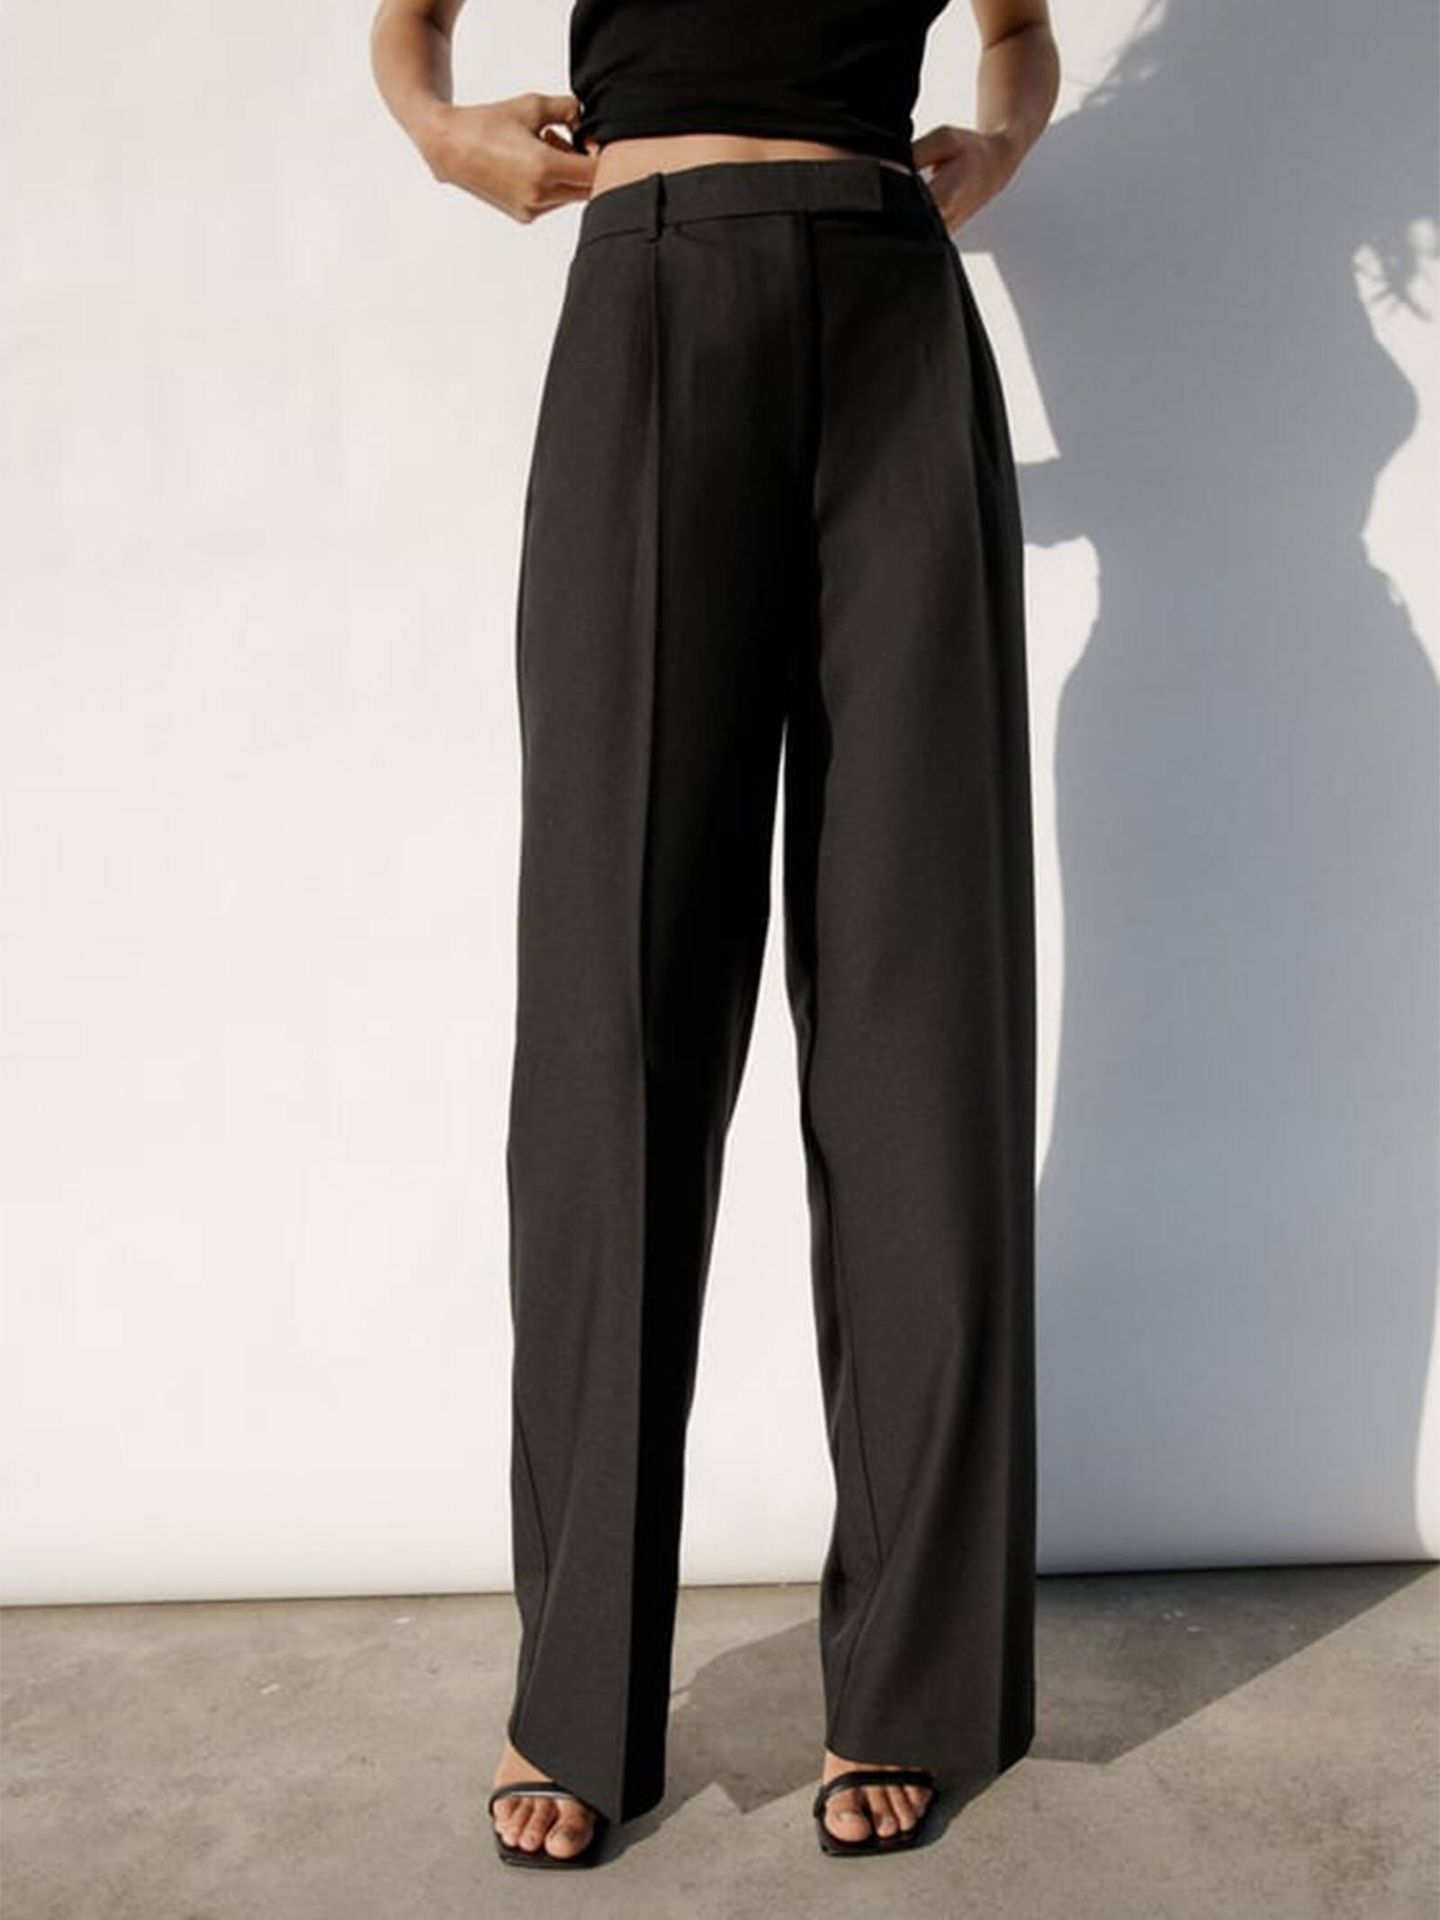 El pantalón con el que Hande Erçel se apunta a la moda española. (Zara/Cortesía)